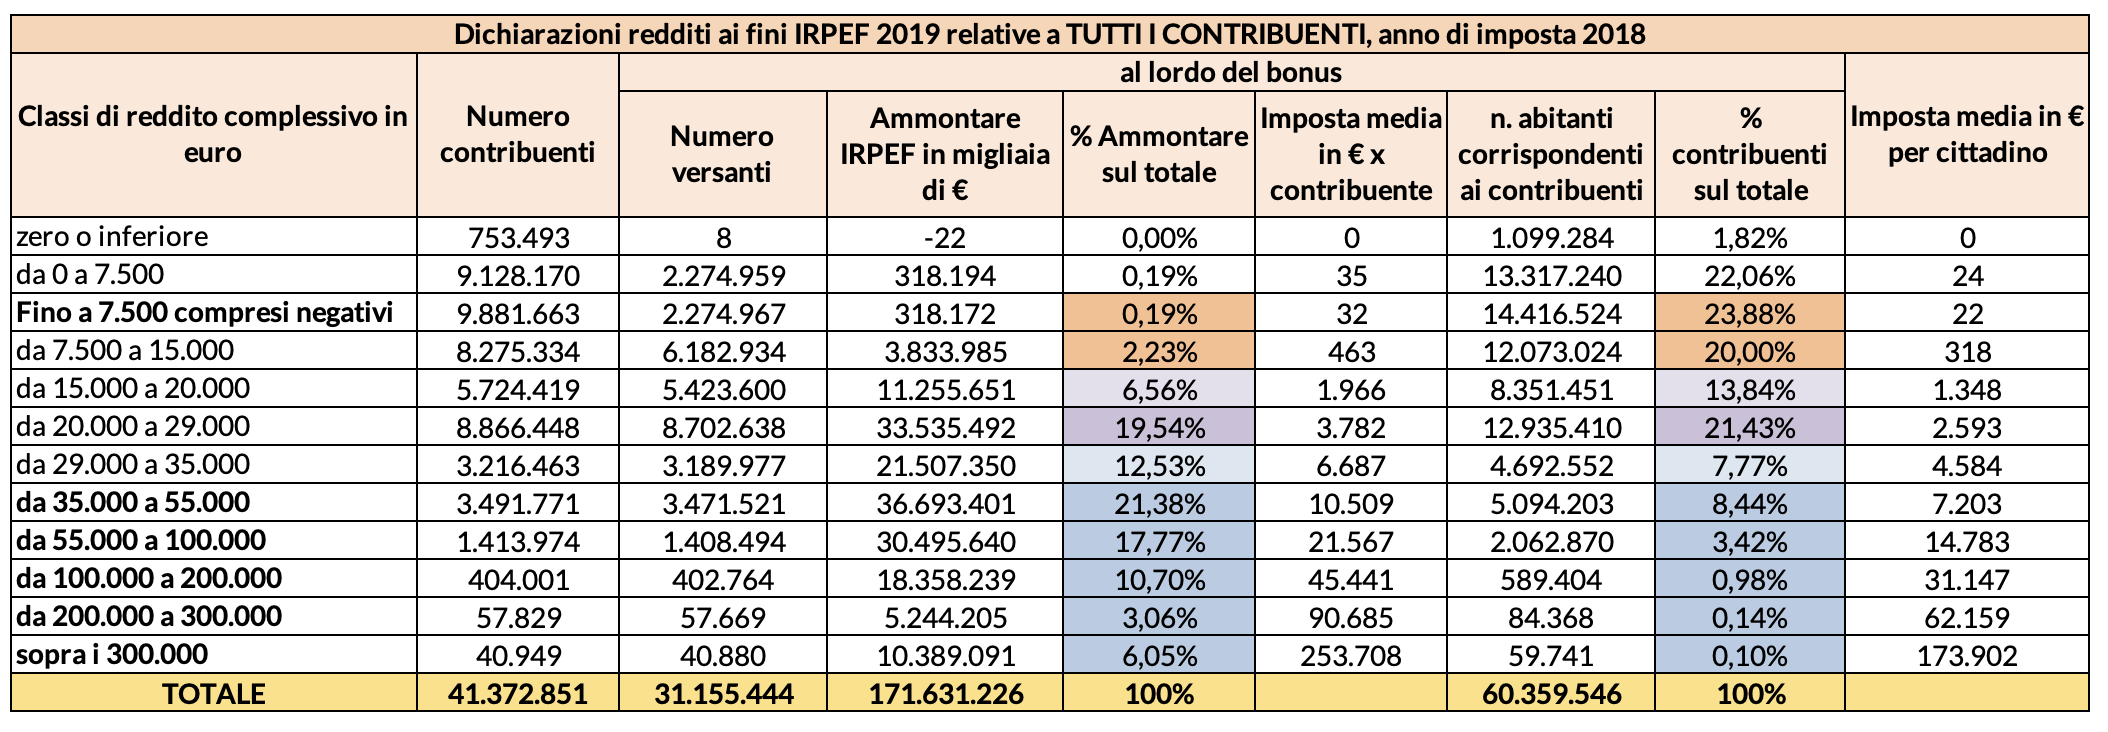 Tabella 1 - Analisi delle dichiarazioni dei reidditi ai fini IRPEF 2019 per classi di reddito complessive